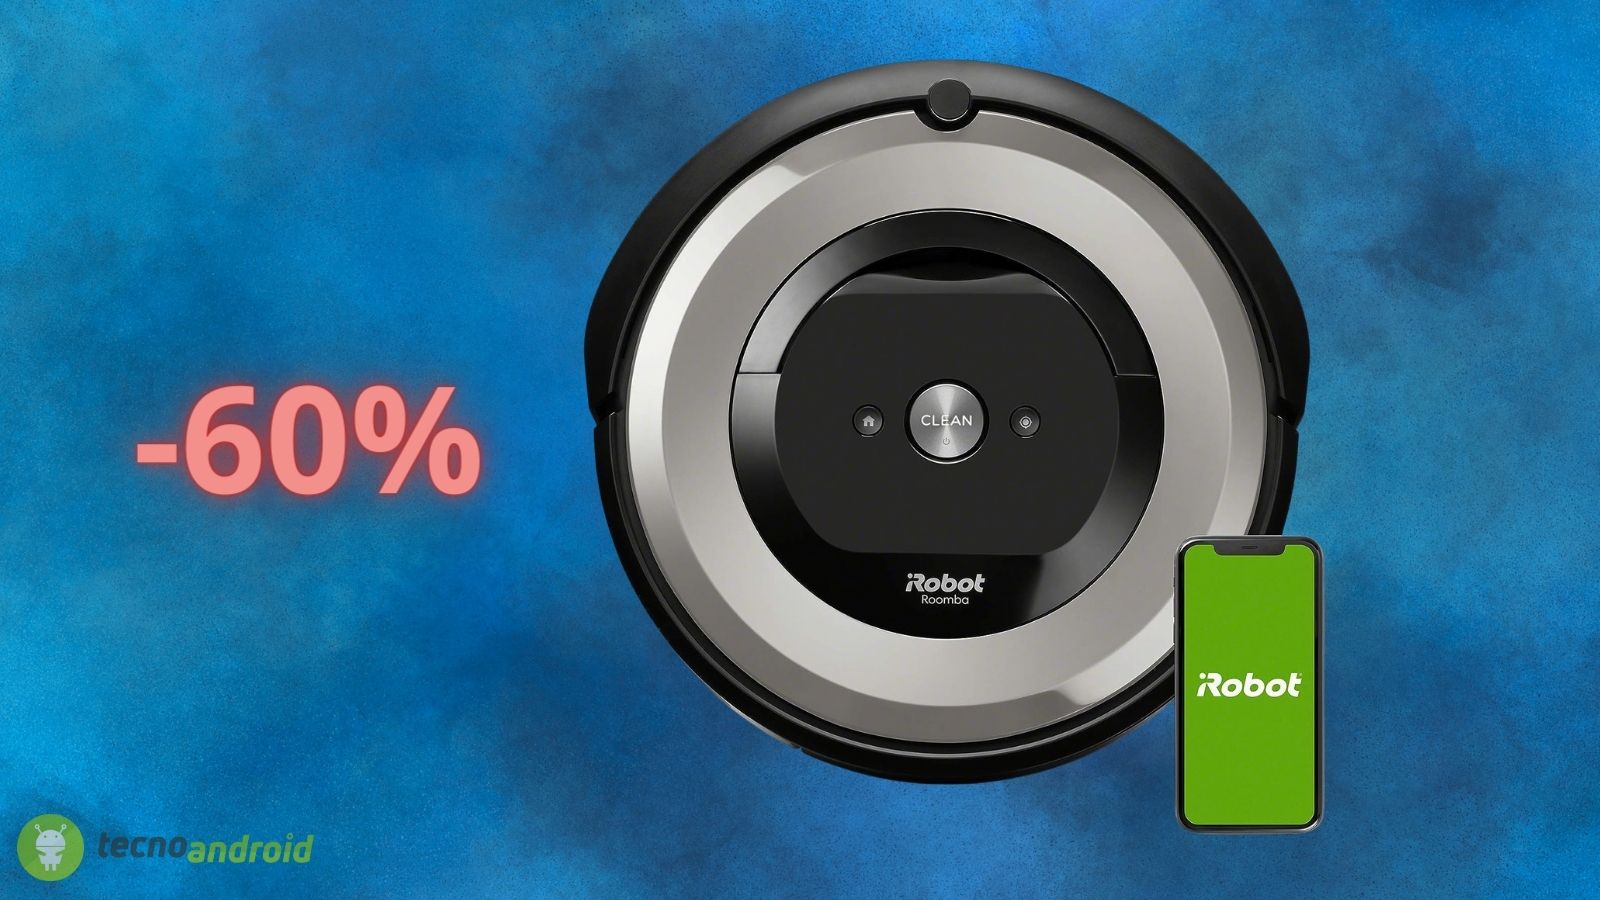 iRobot Roomba, prezzo Black Friday al 60%: acquistate il robot aspirapolvere